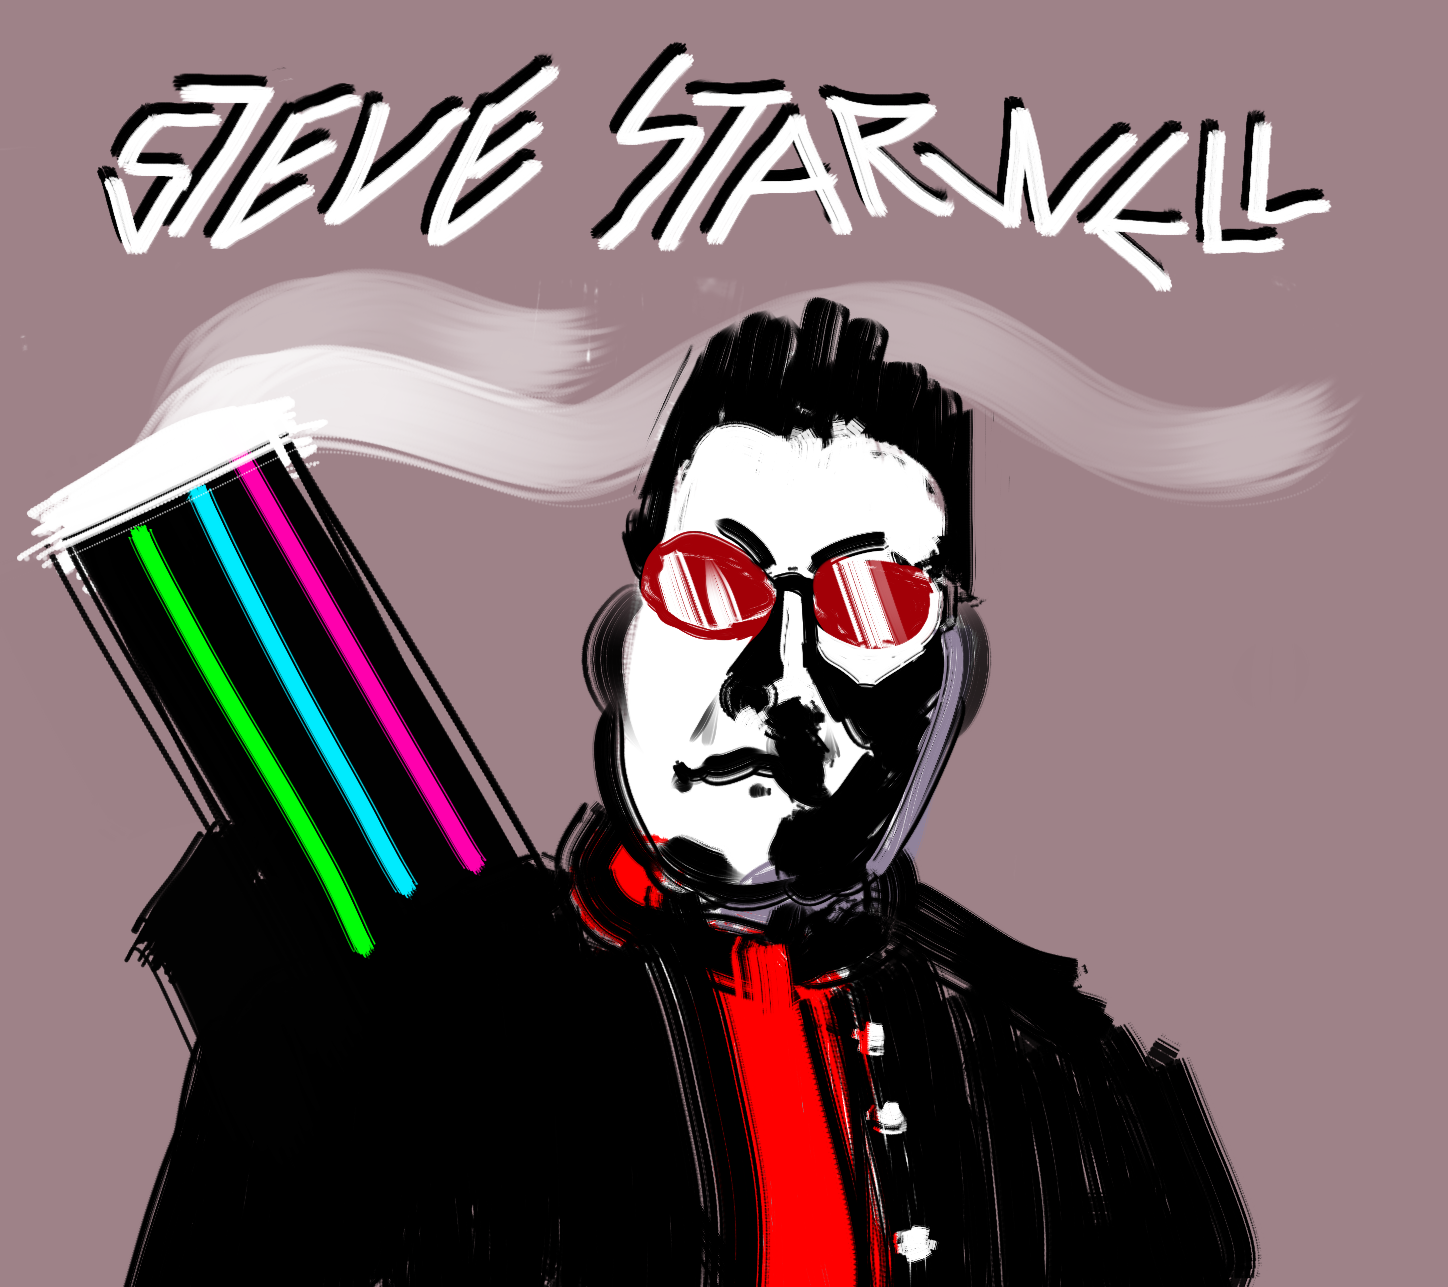 Steve Starwell